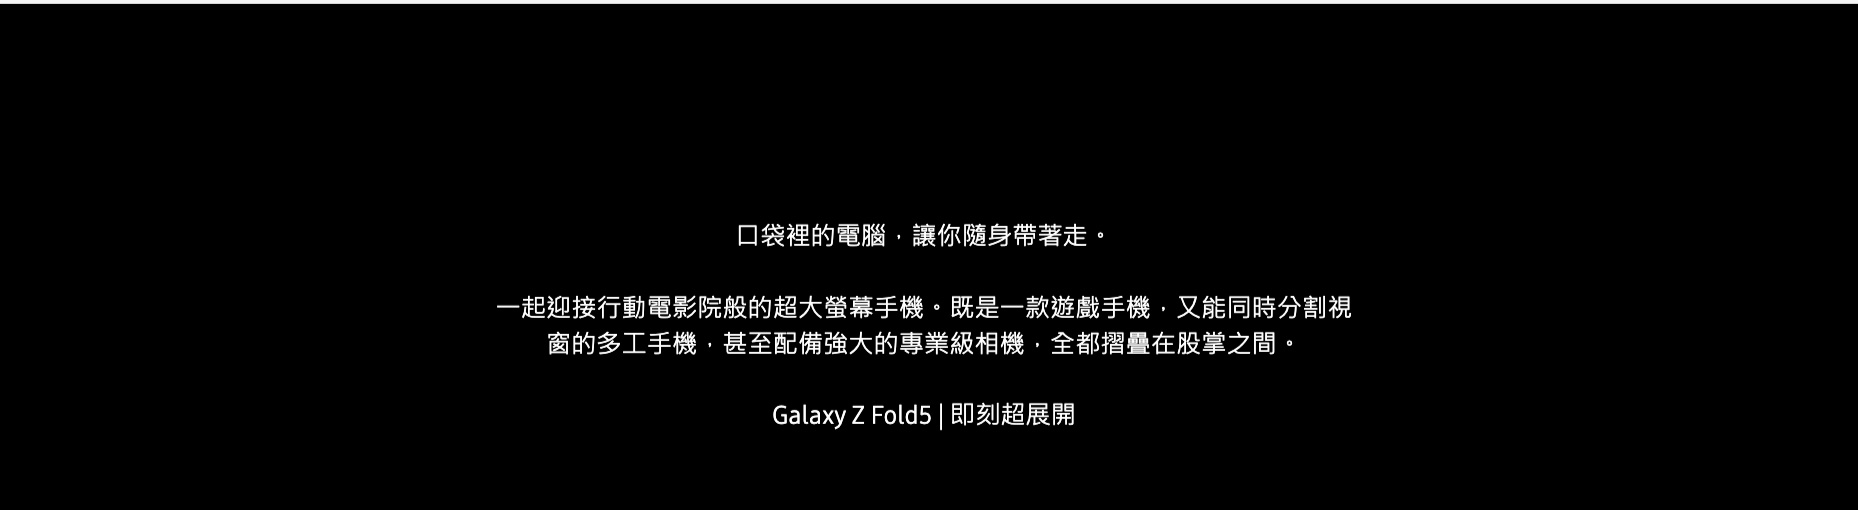 三星Galaxy Fold5